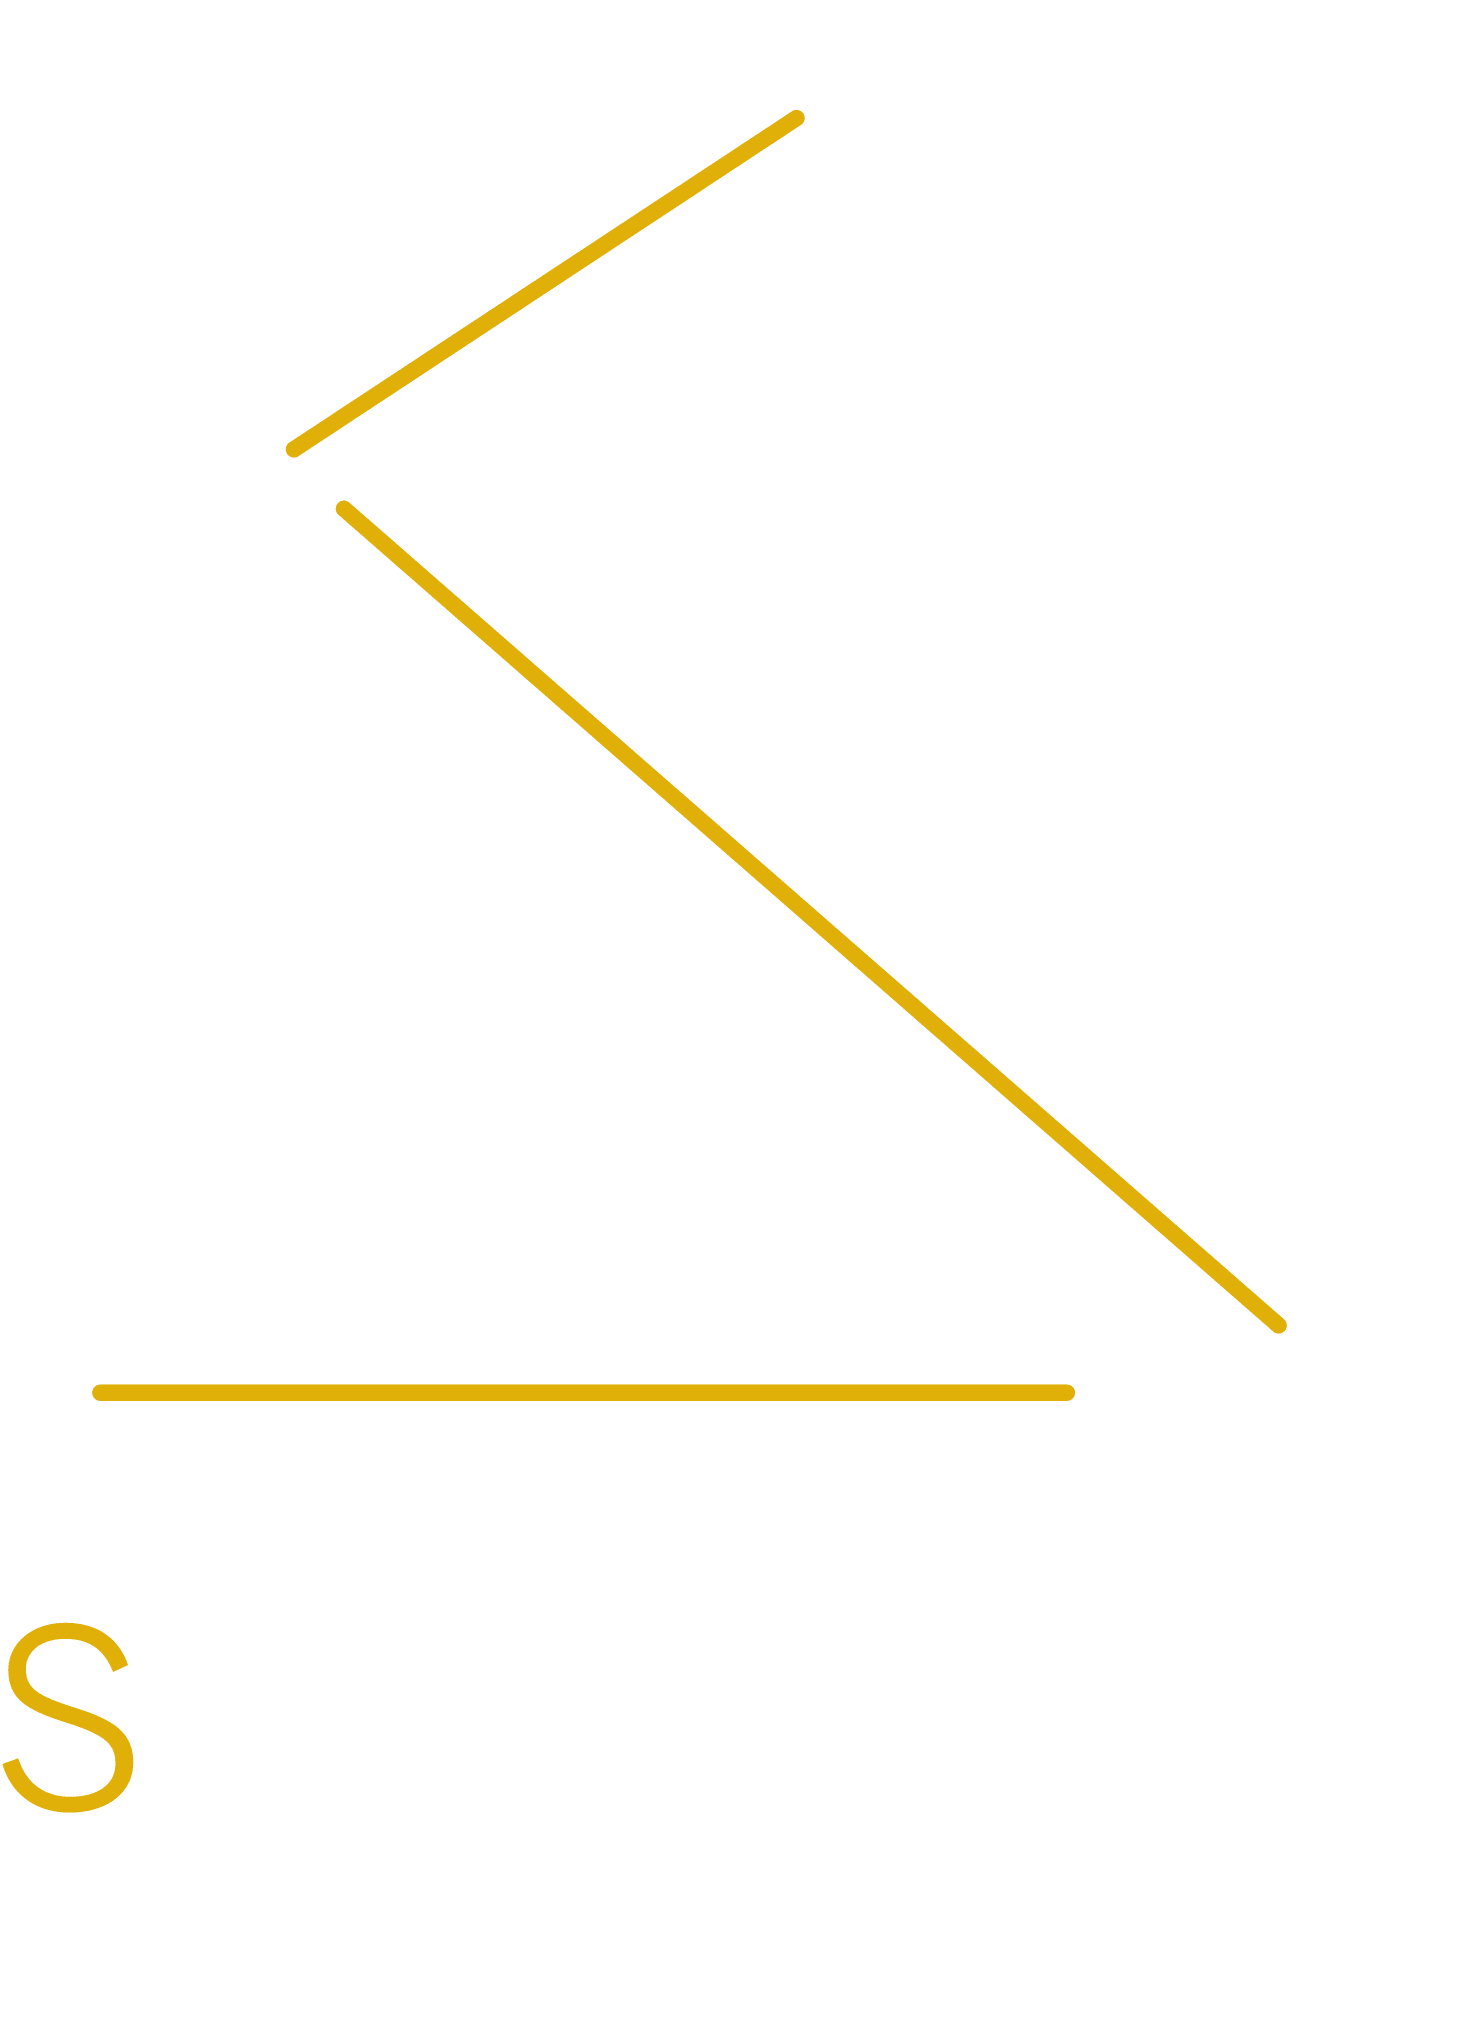 SCHMAND Architektur - Stefan Schmand